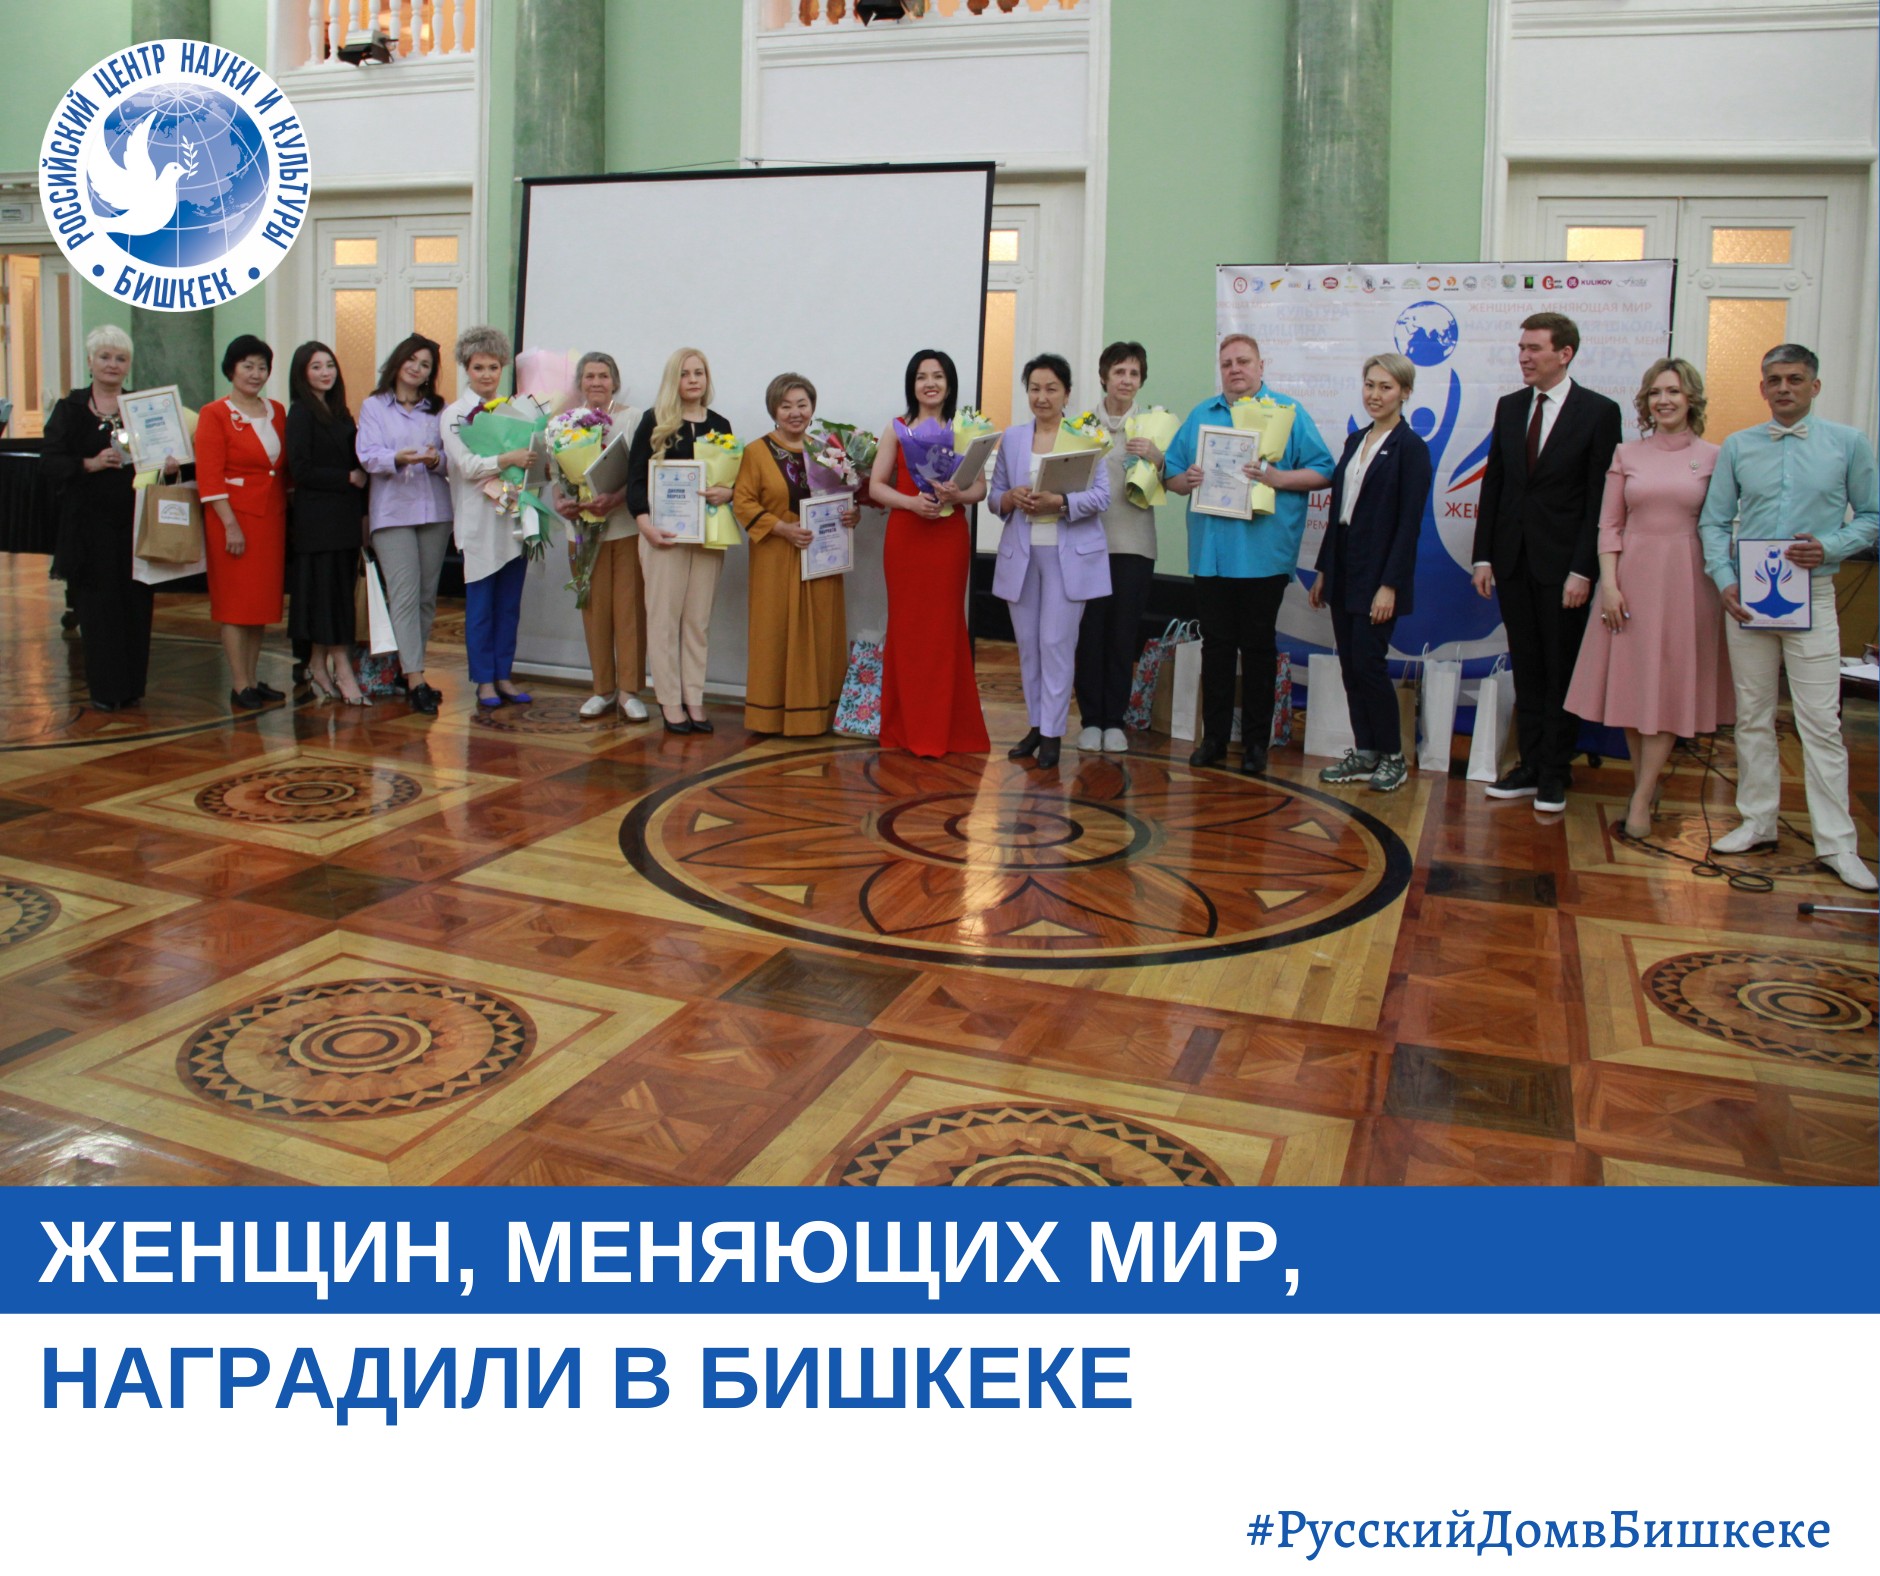 В Бишкеке состоялась церемония награждения победительниц общенационального конкурса «Женщина, меняющая мир»